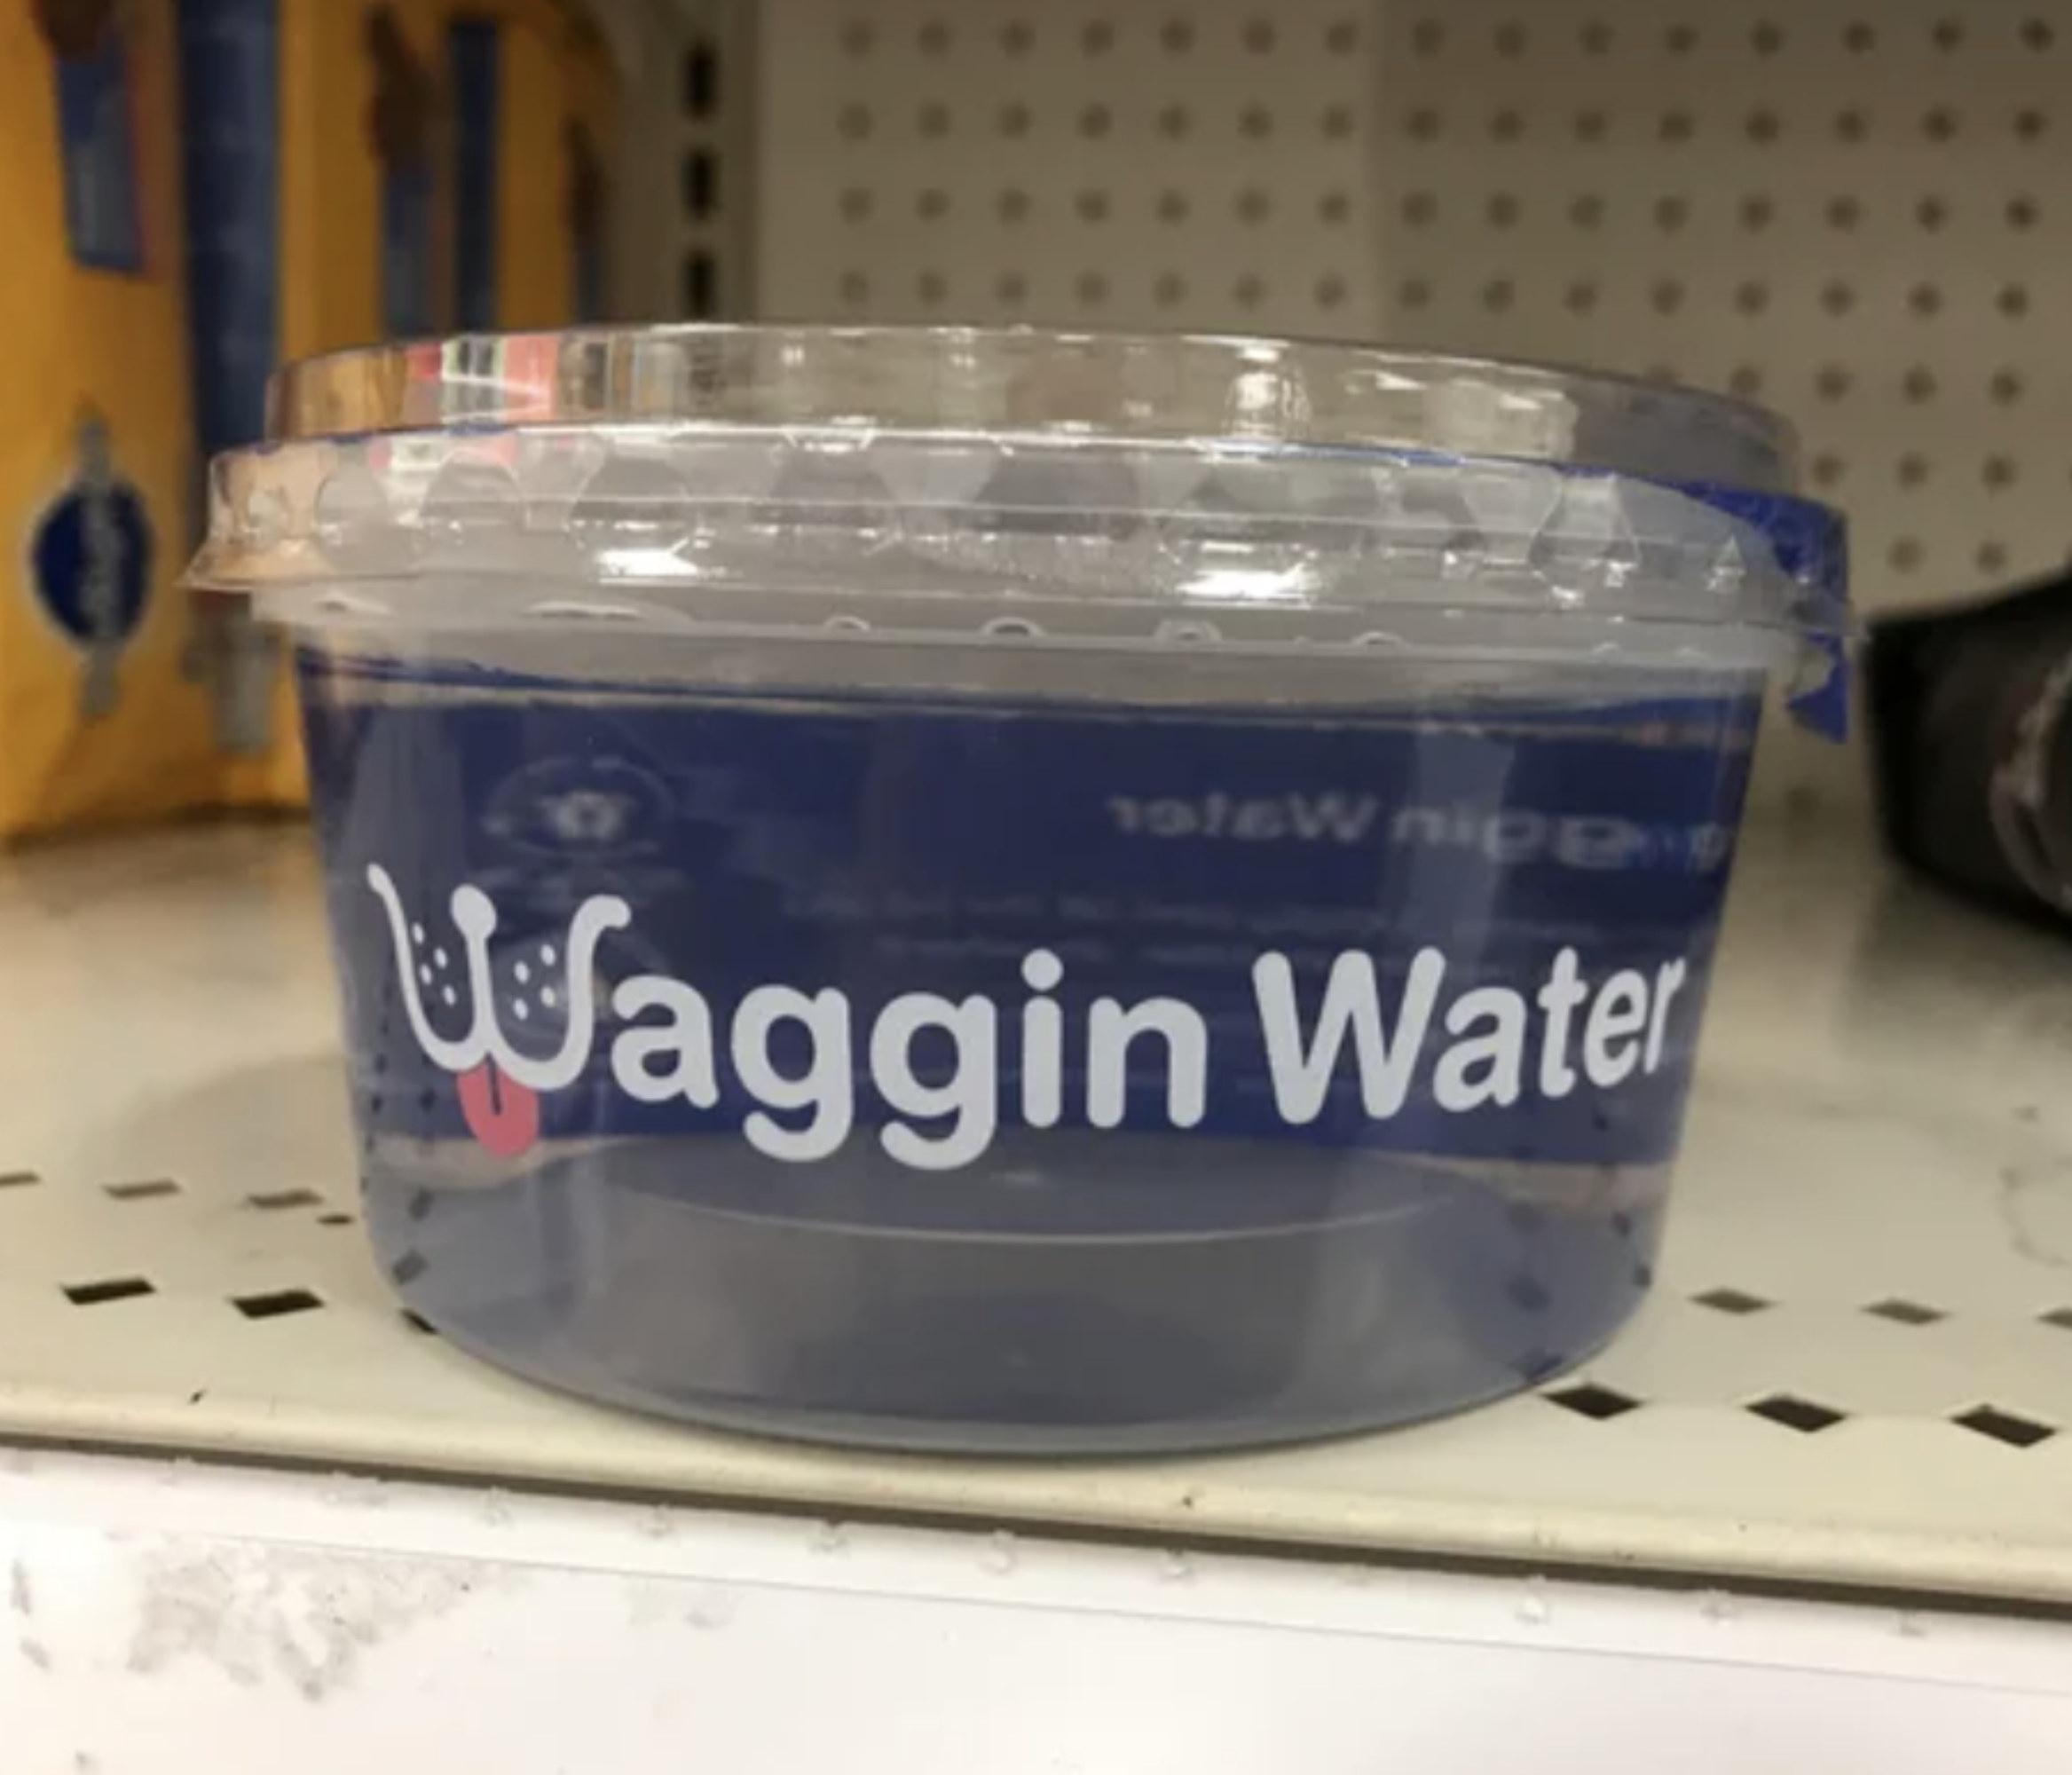 Waggin Water